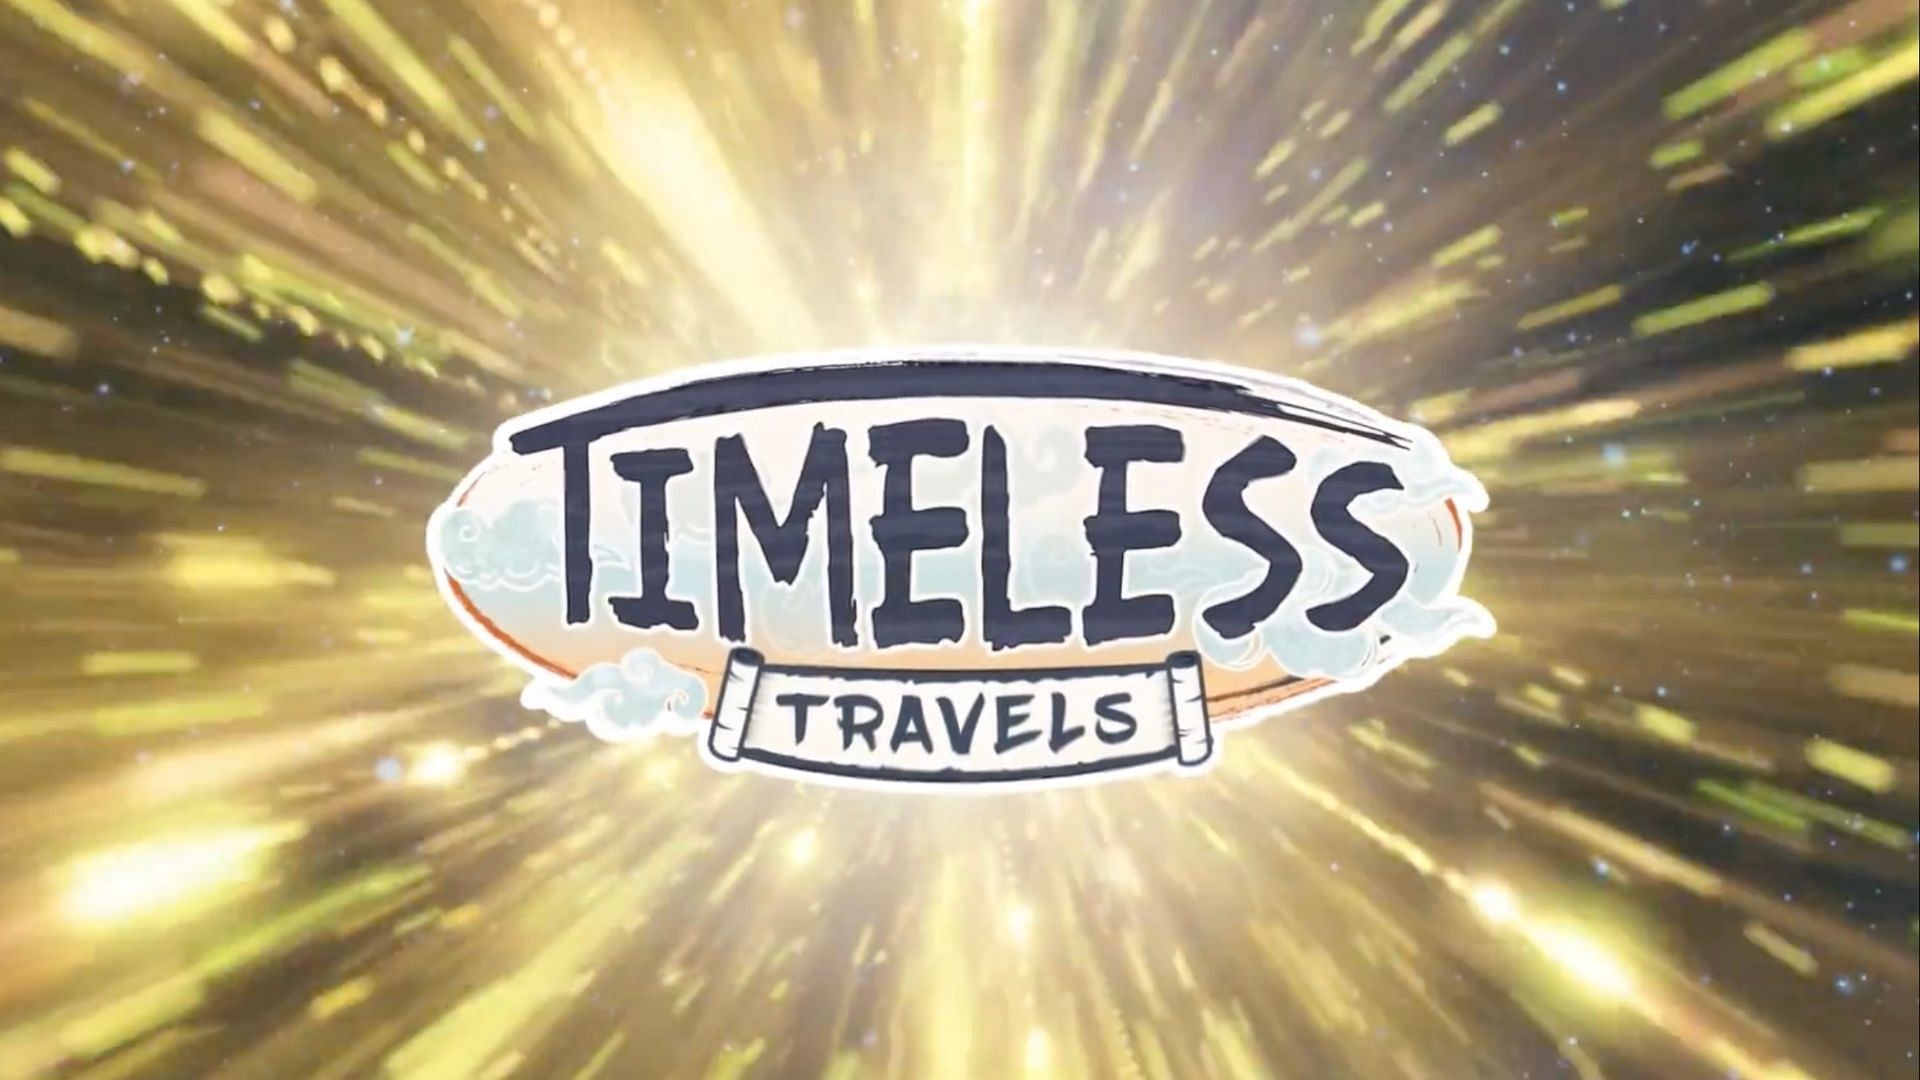 Pokemon GO Timeless Travels trailer